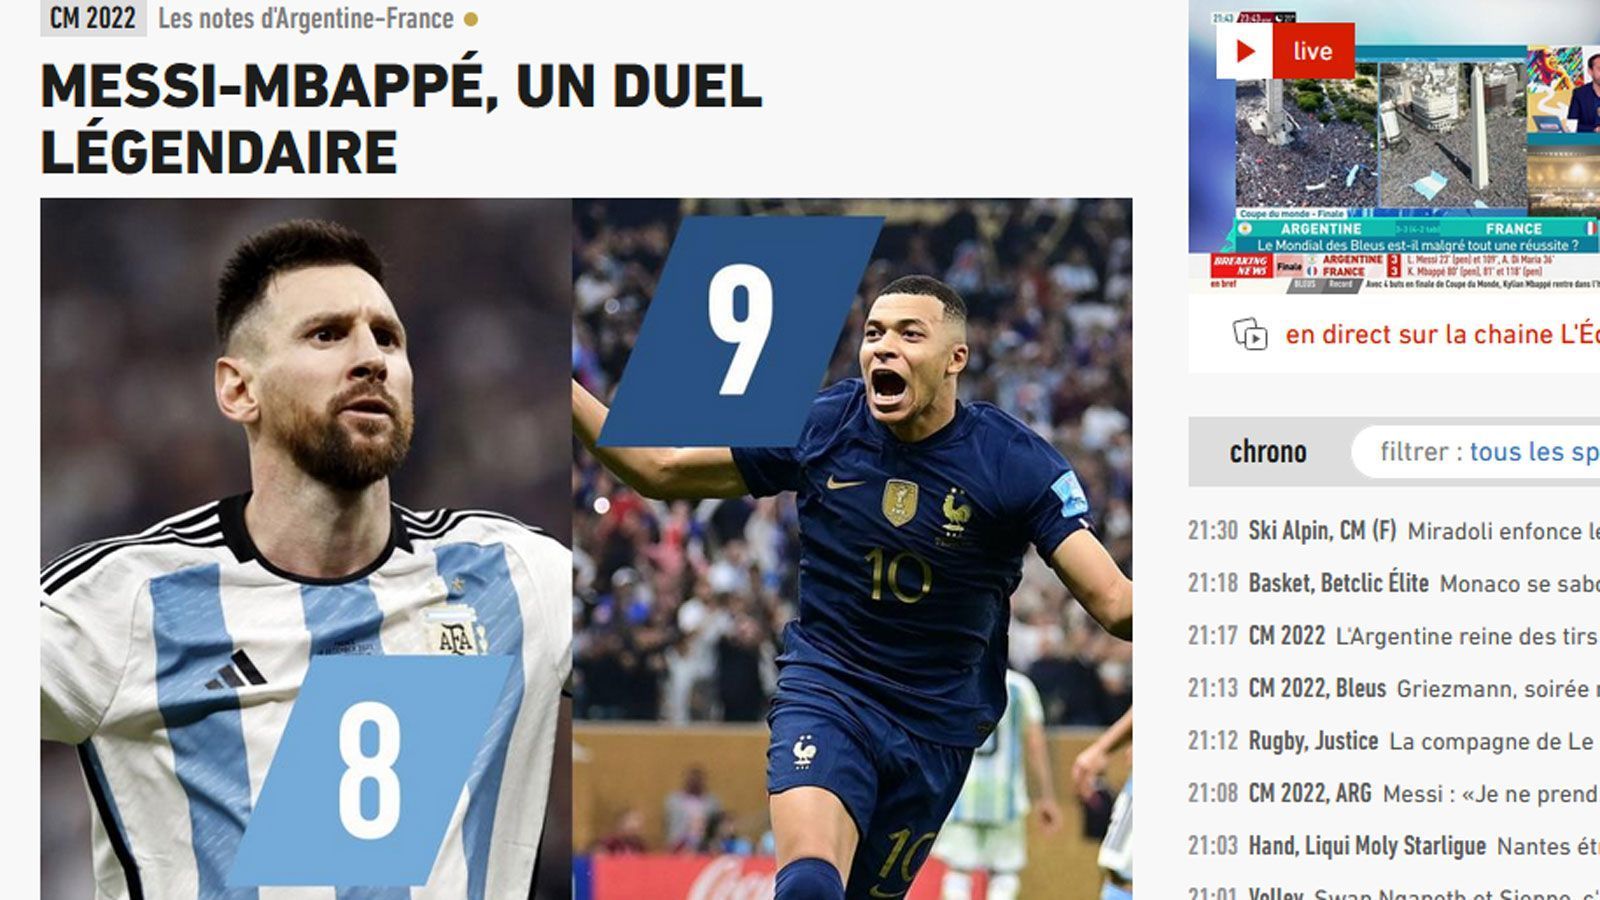 
                <strong>L'Equipe (Frankreich)</strong><br>
                "Messi-Mbappe - ein legendäres Duell! Verhängnisvolle Tränen. Nach einem Finale mit surrealem Szenario, vielleicht dem schönsten der Geschichte, gewann Argentinien die Weltmeisterschaft, indem es die französische Mannschaft im Elfmeterschießen besiegte."
              